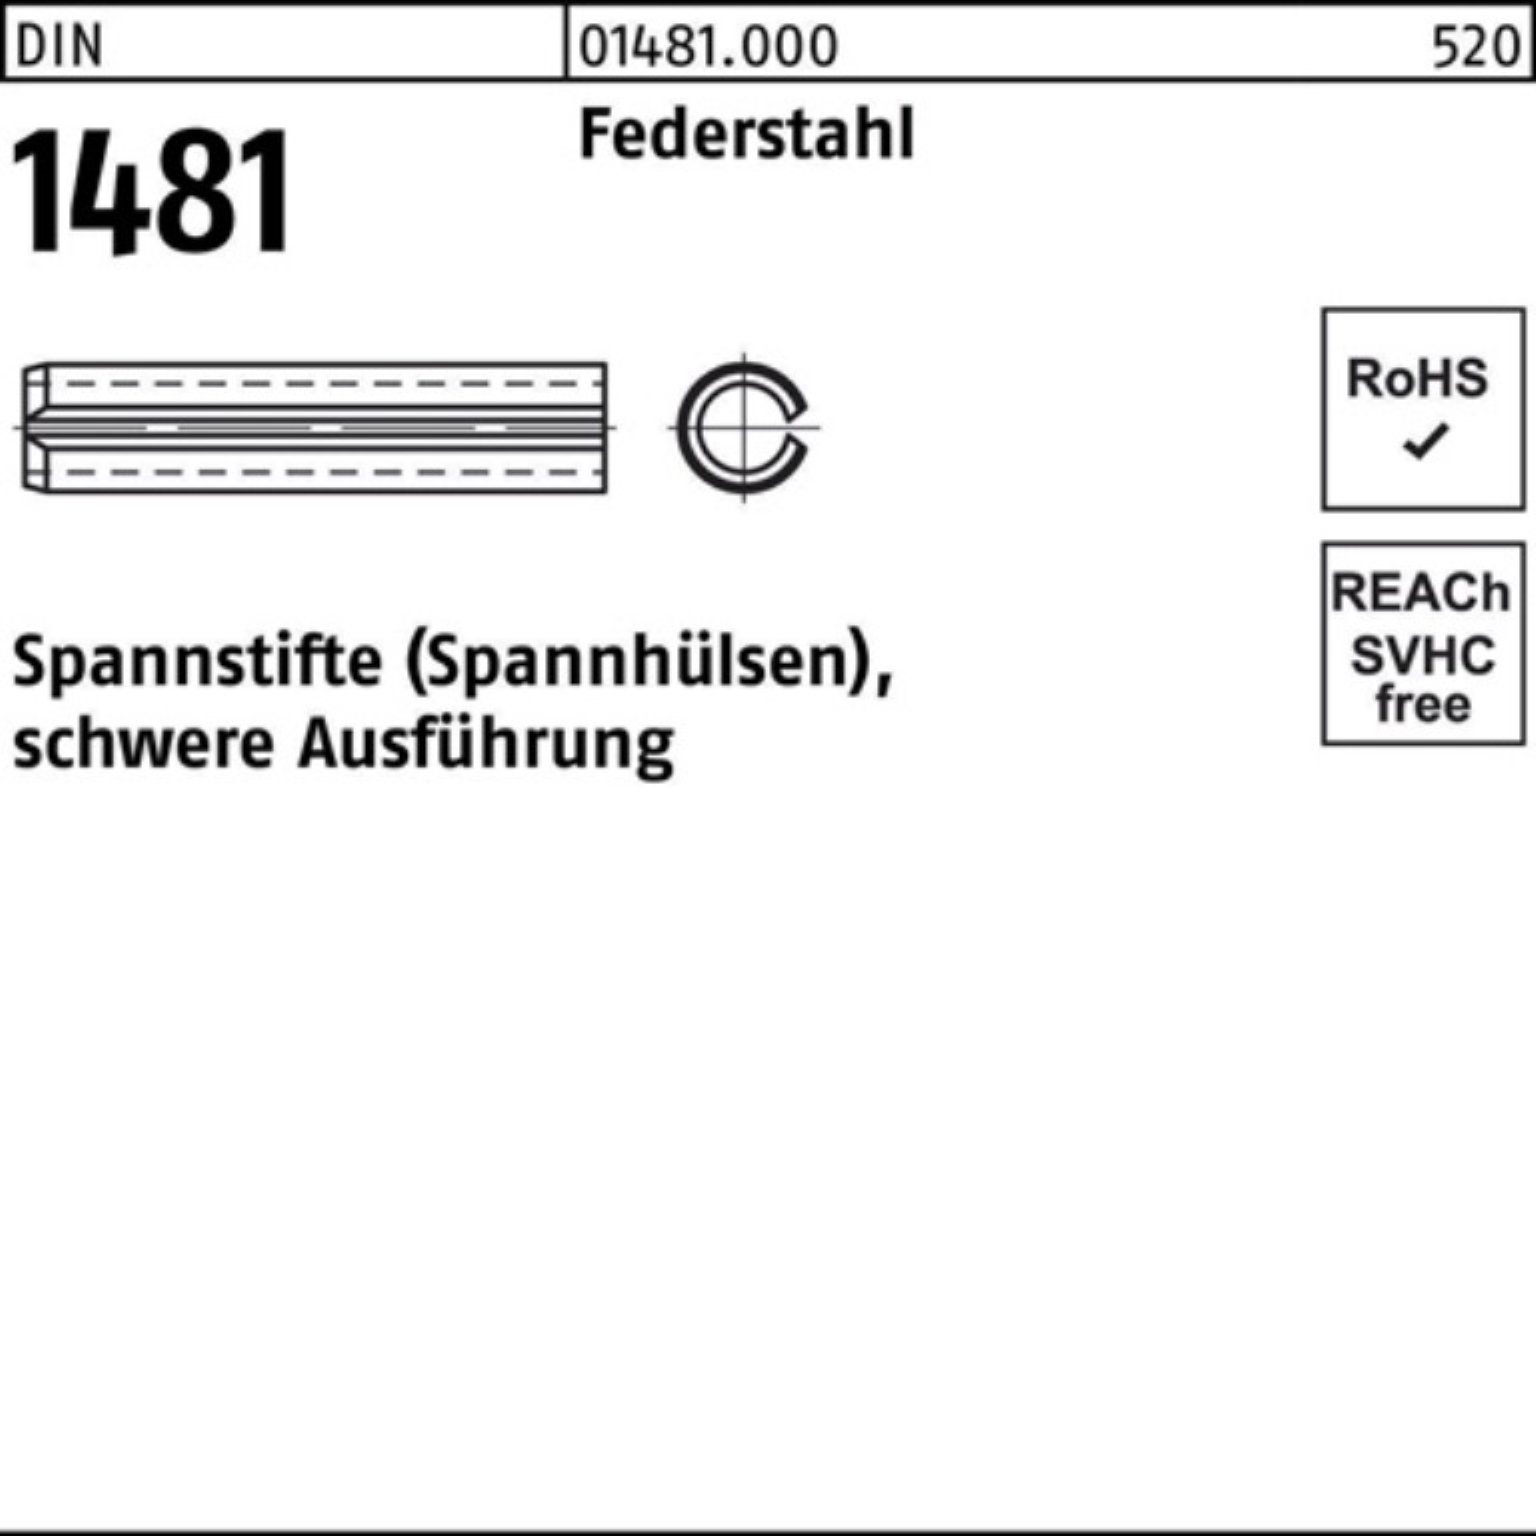 Reyher Spannstift 100er Pack Spannstift 45 1481 Federstahl 10 Ausführung schwere DIN 4x